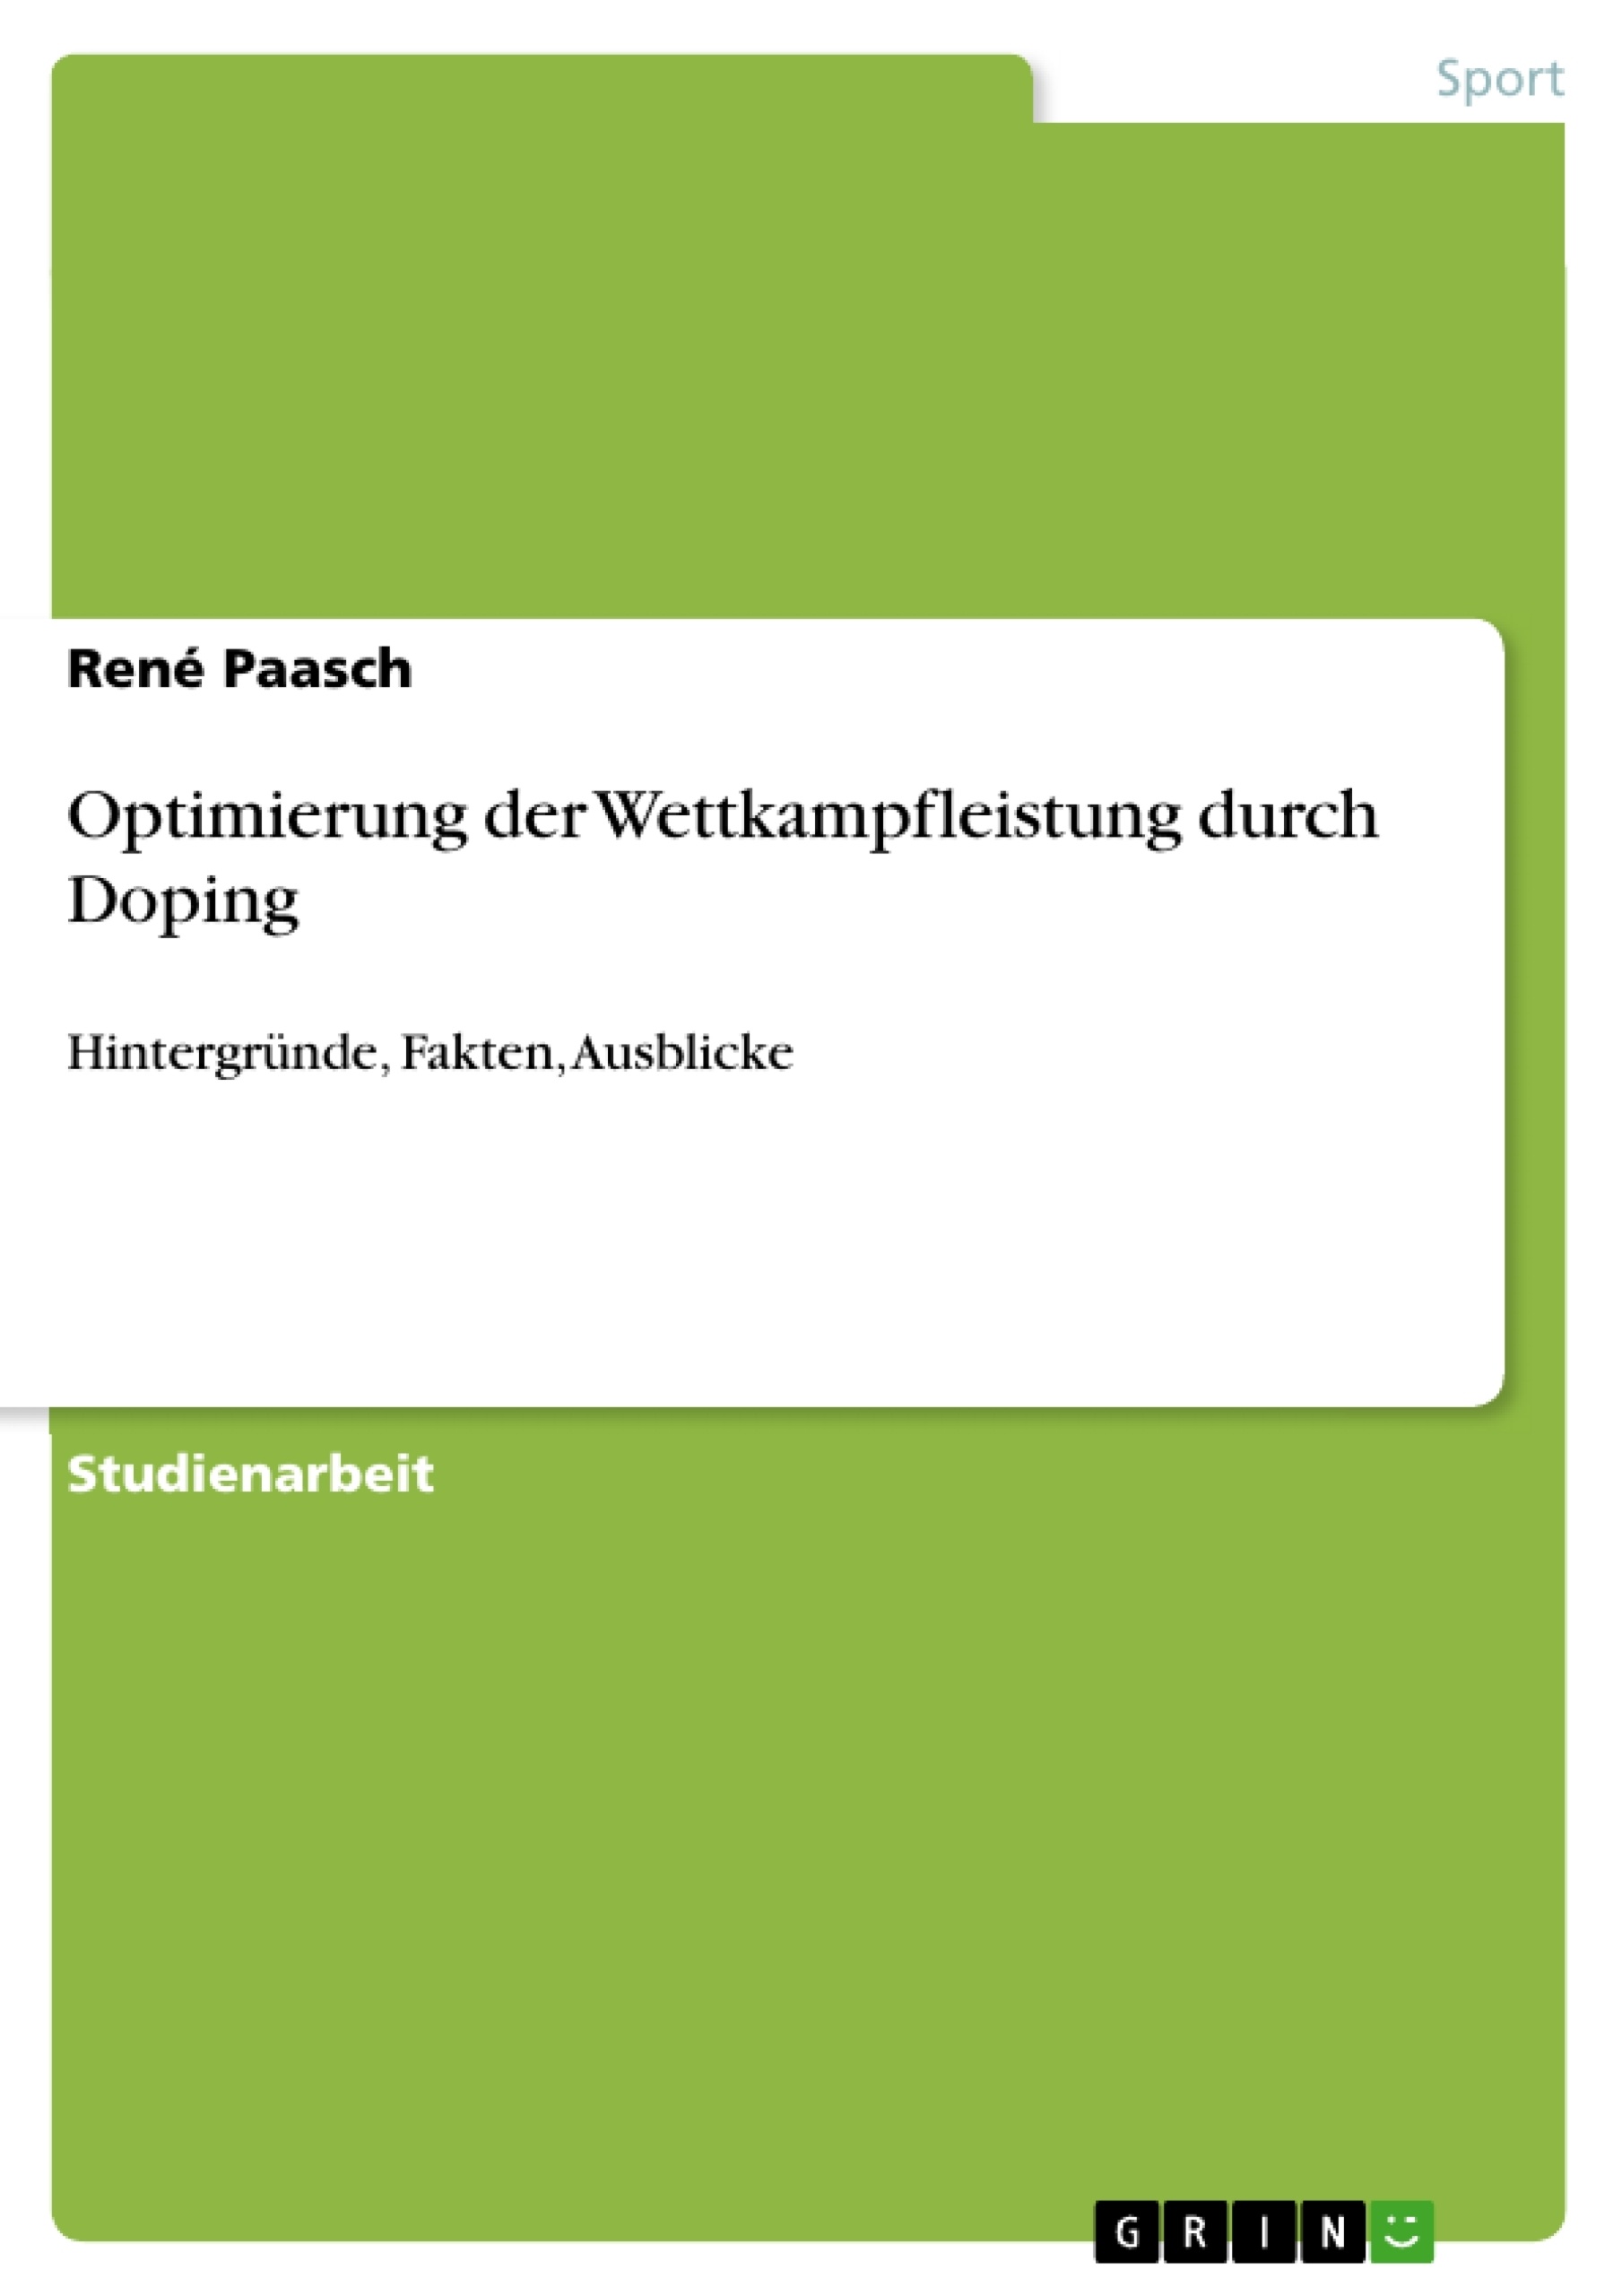 Title: Optimierung der Wettkampfleistung durch Doping